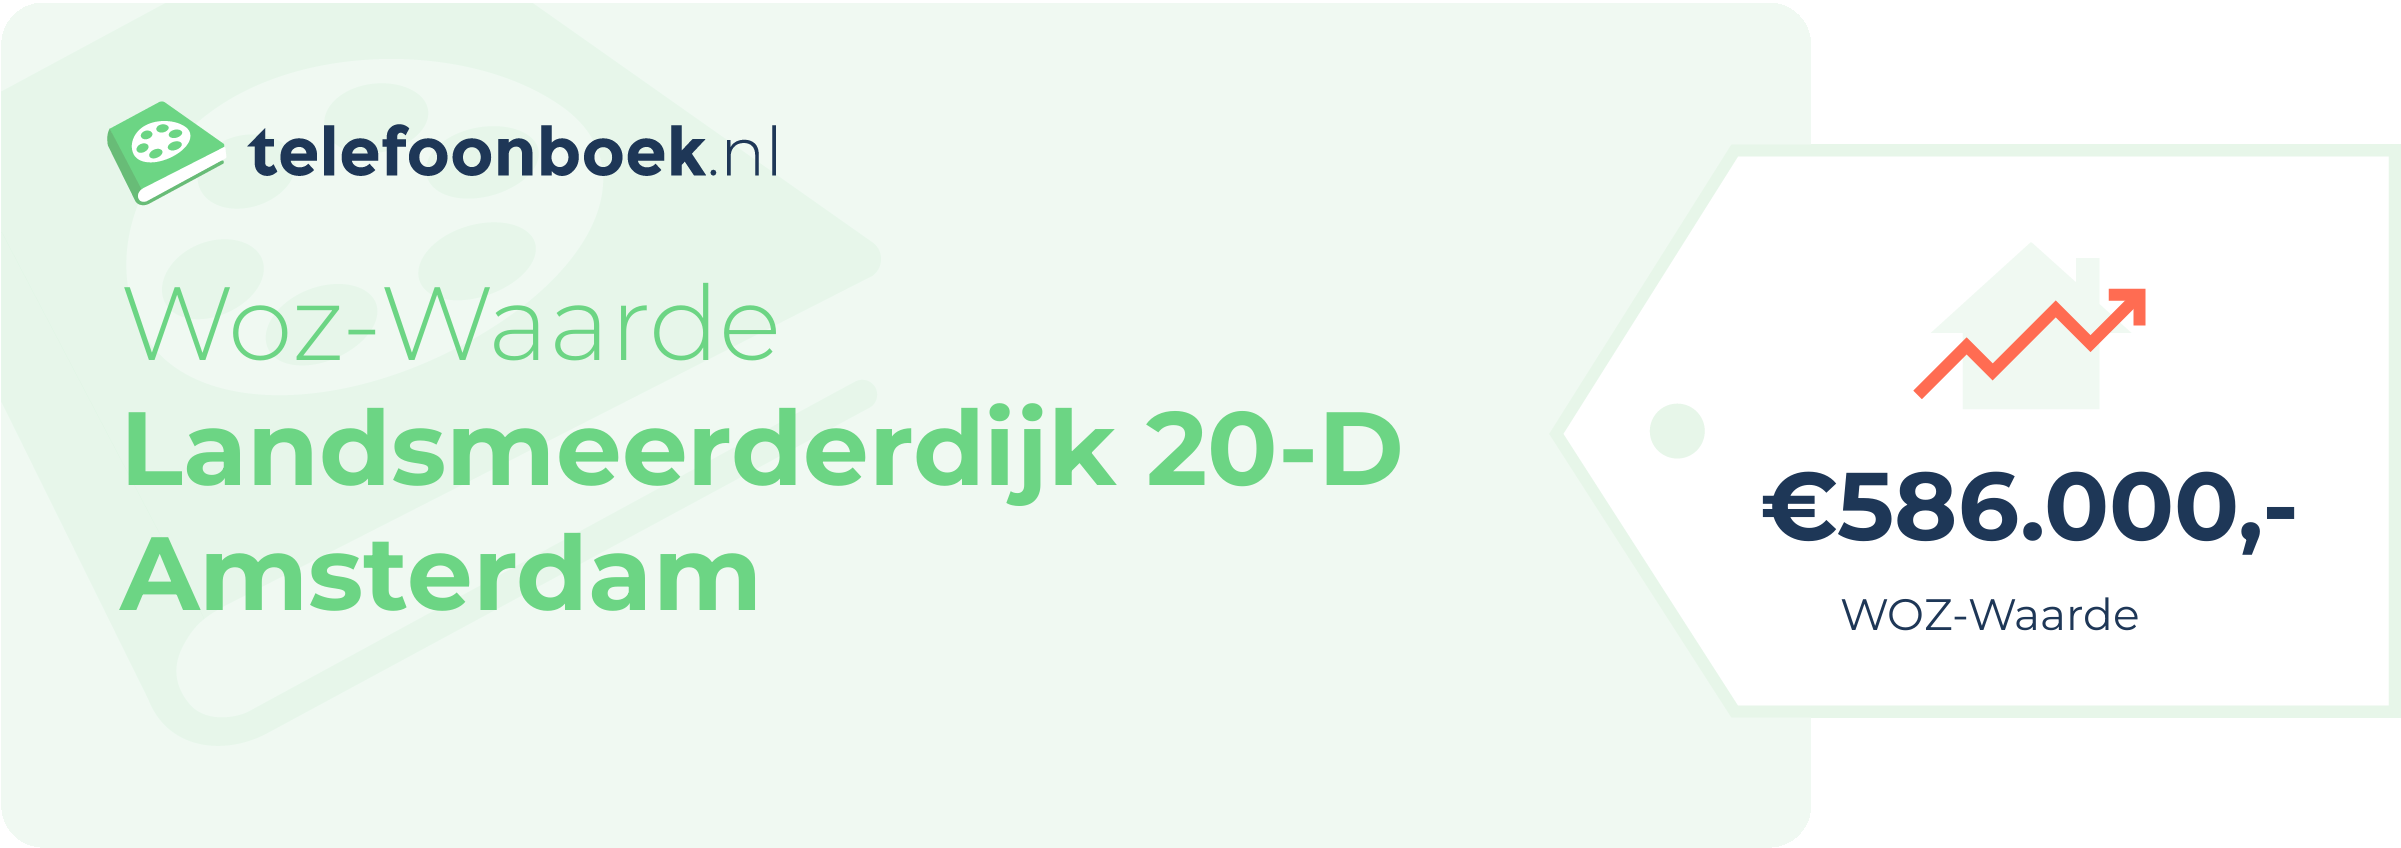 WOZ-waarde Landsmeerderdijk 20-D Amsterdam